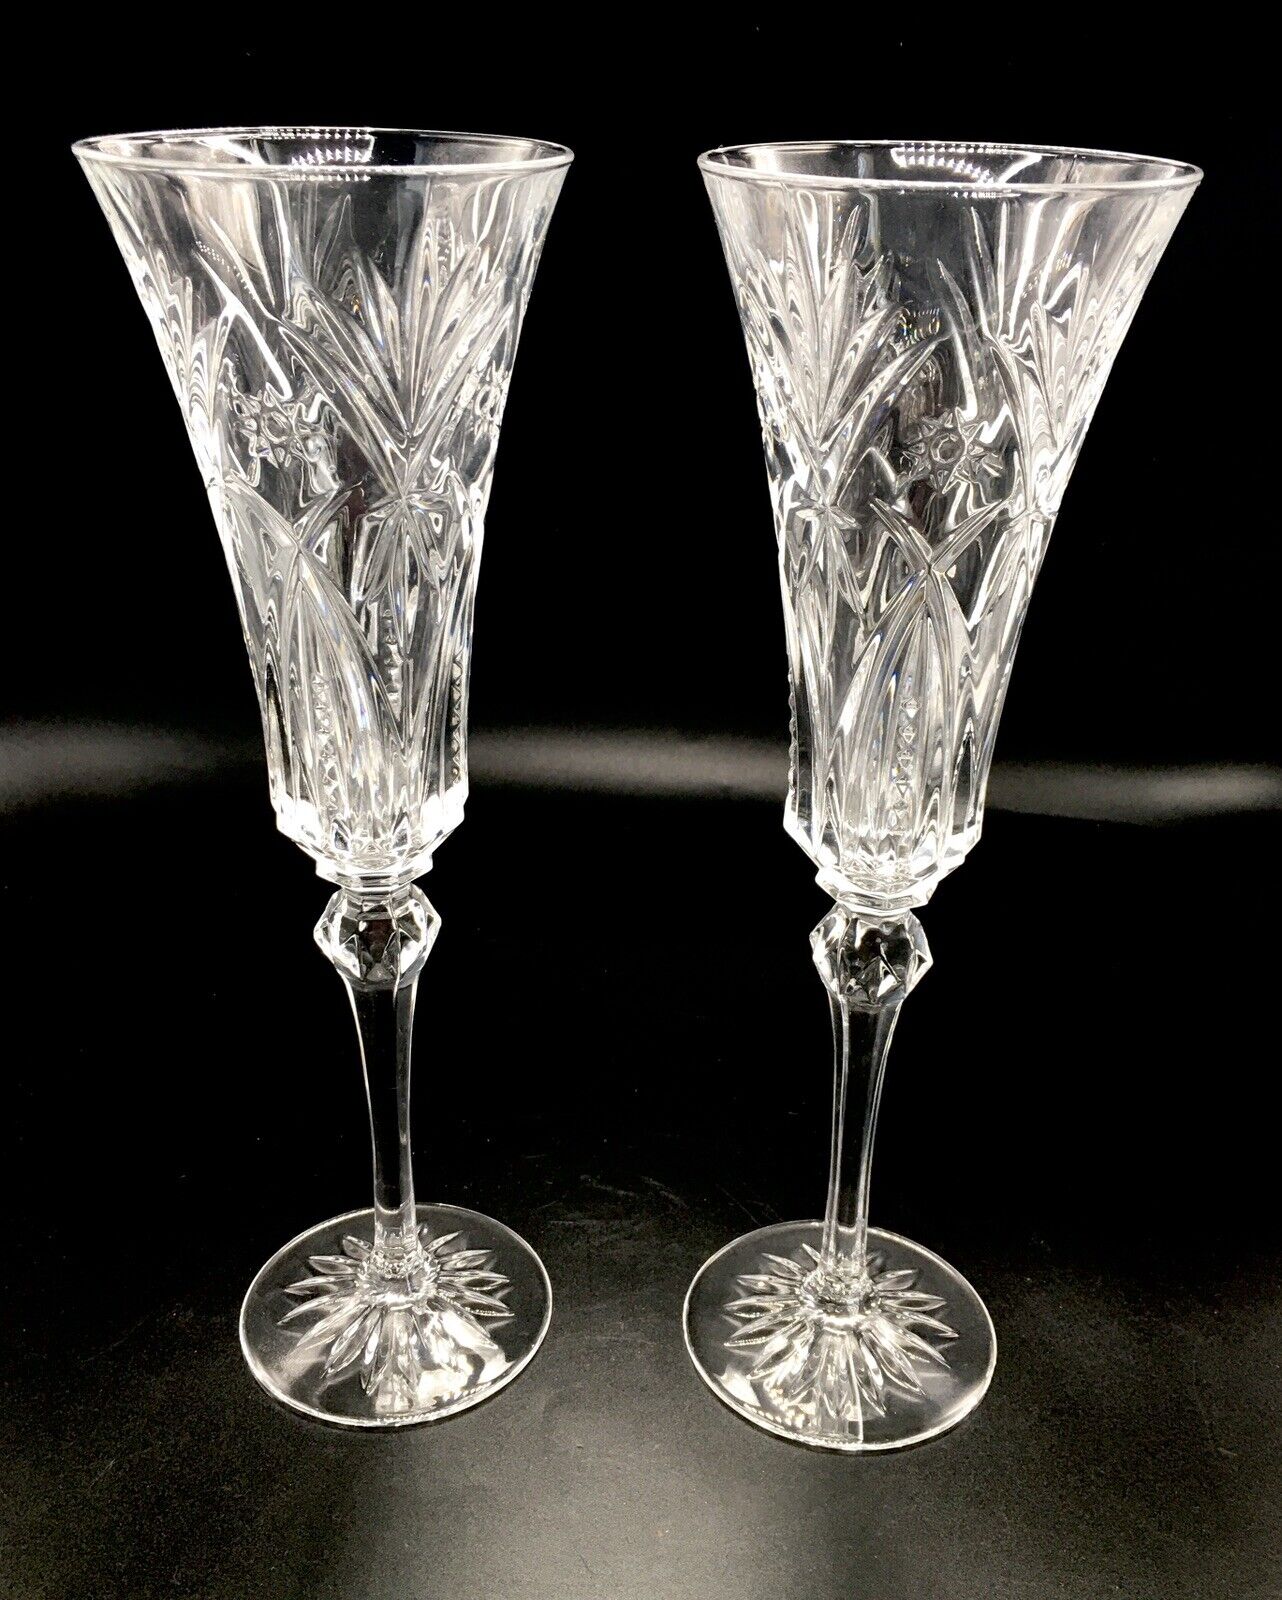 NEW VTG J.G. Durand Vincennes Cut Lead Crystal Champagne Flutes Glasses 10”